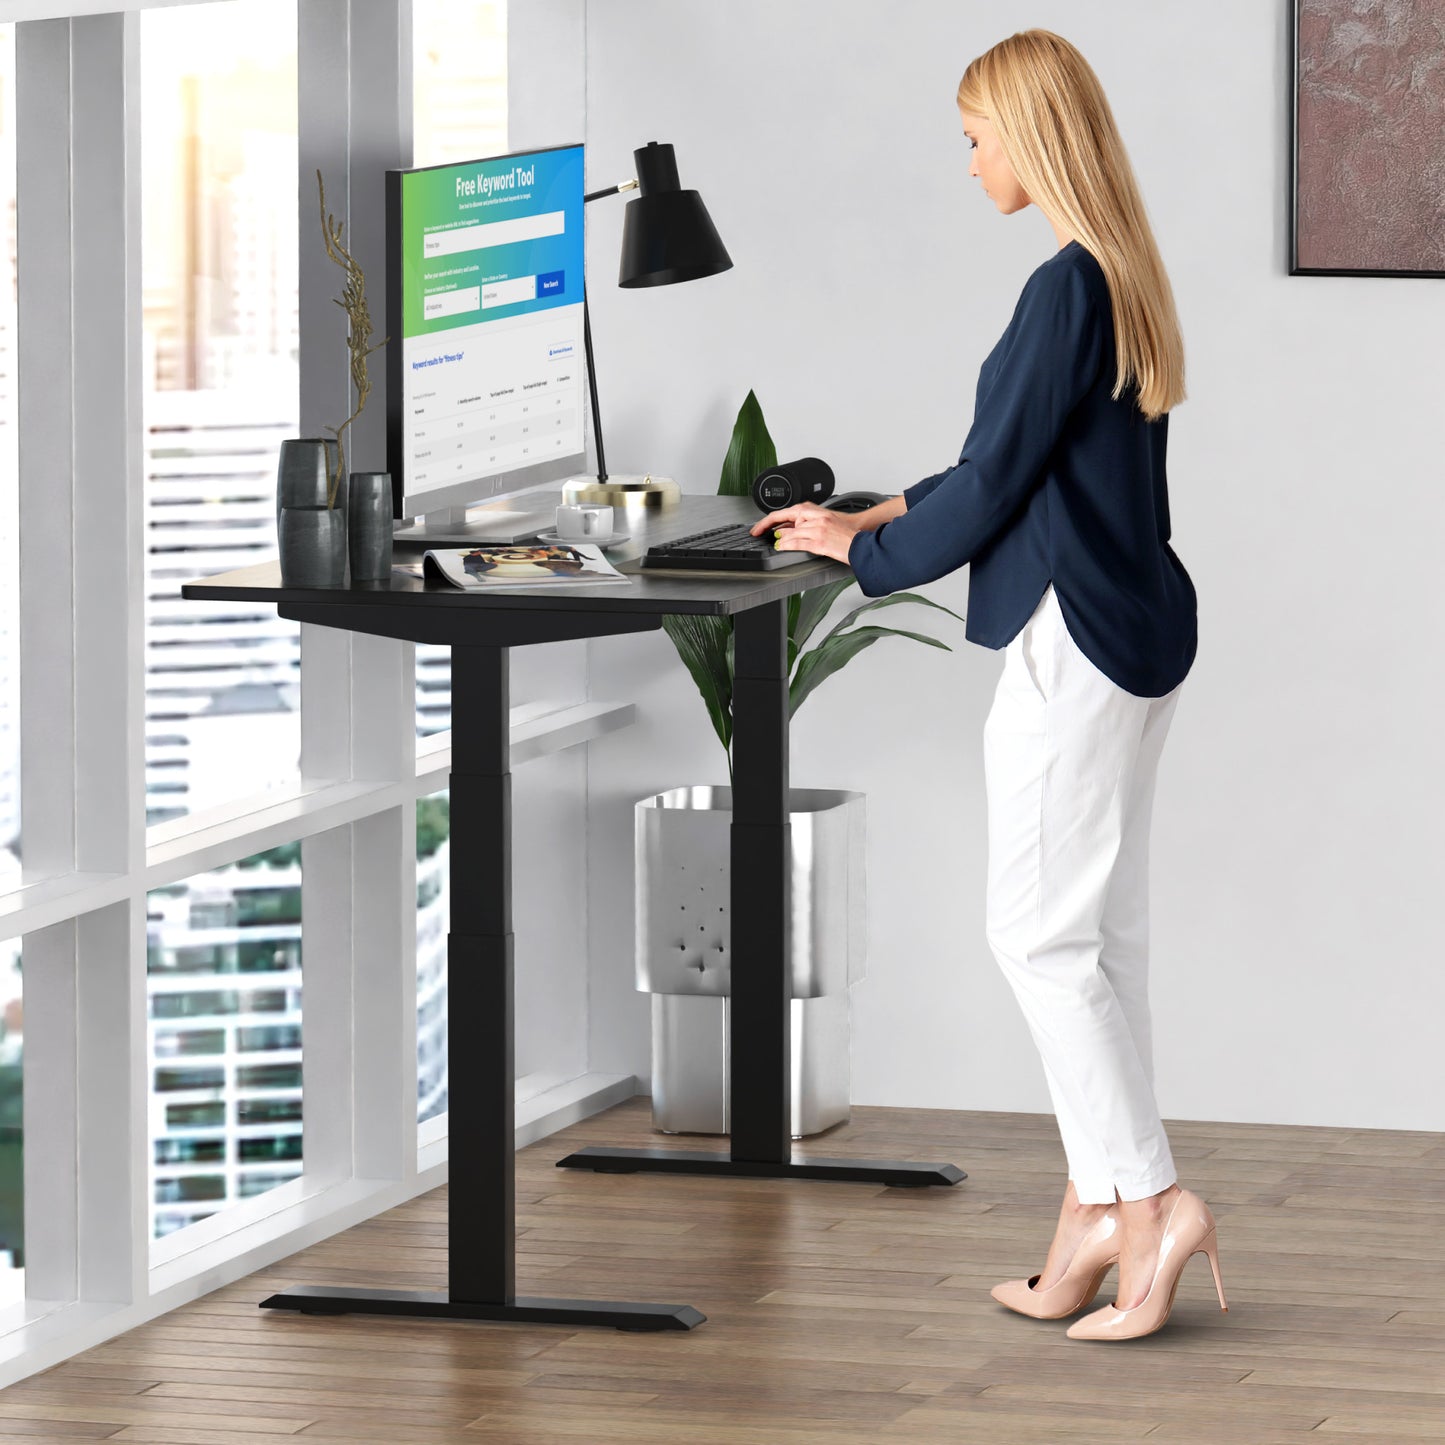 Premier 52" Black Dual Motor Electric Office Adjustable Standing Desk